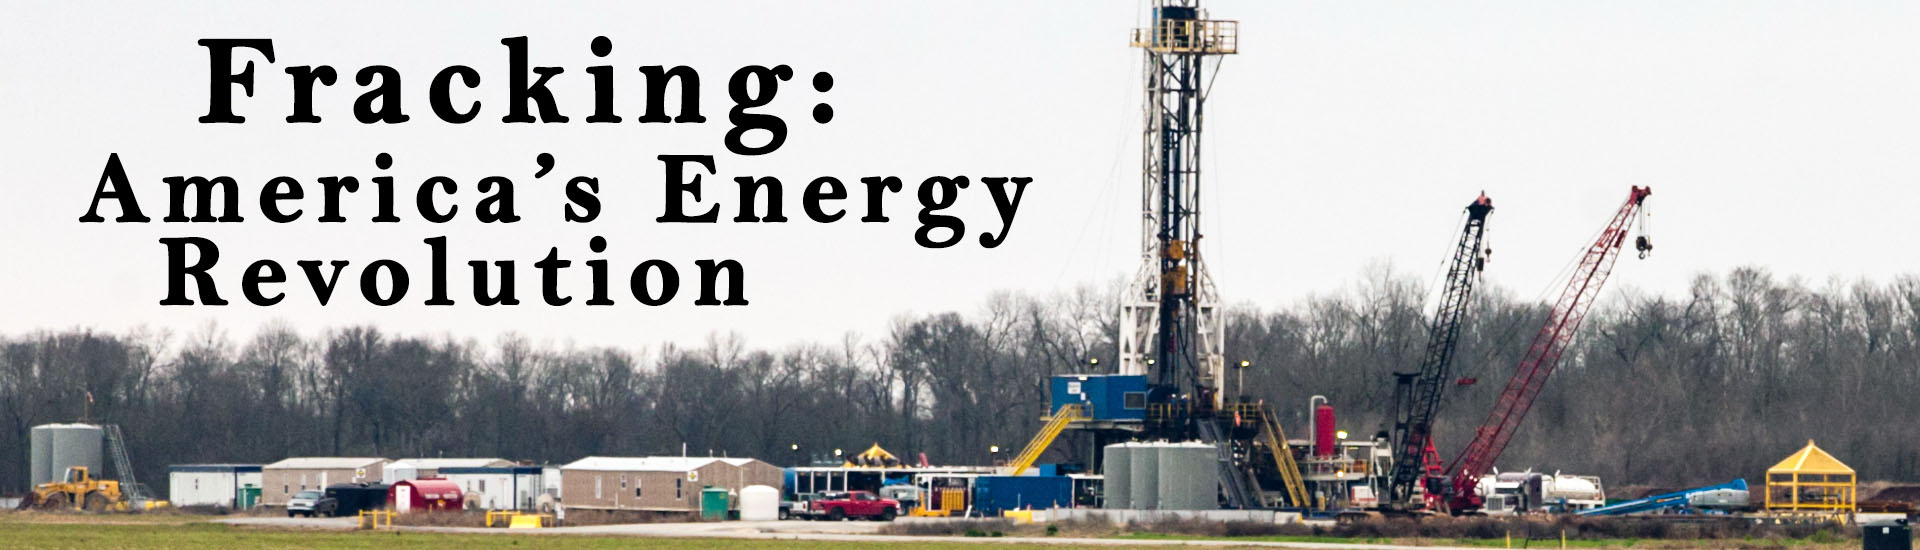 Fracking: America's Energy Revolution